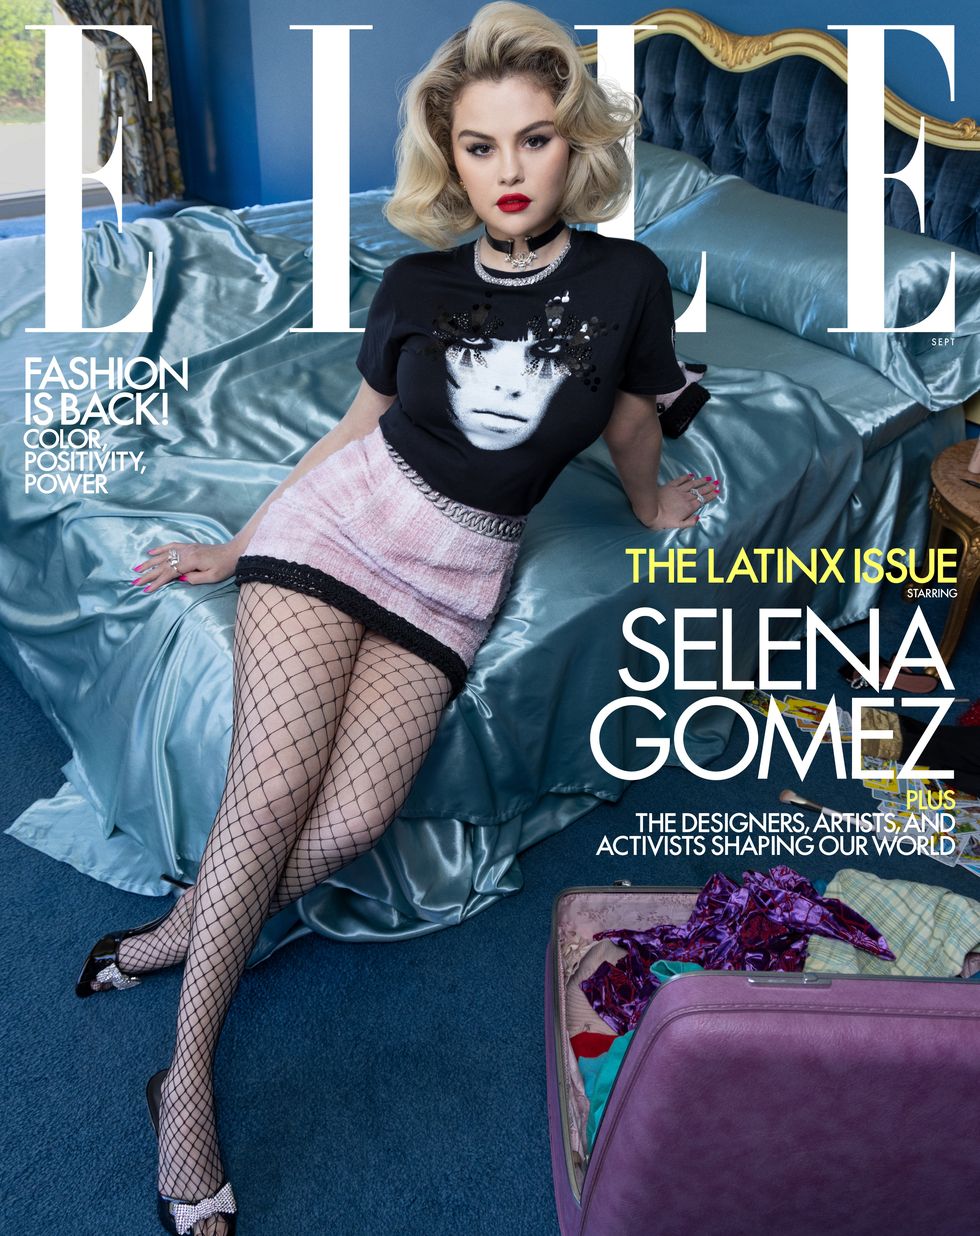 Xuất hiện trên bìa tạp chí thời trang, Selena Gomez gây ấn tượng với phong cách quyến rũ và nét đẹp cổ điển y như nữ minh tinh Marilyn Monroe.